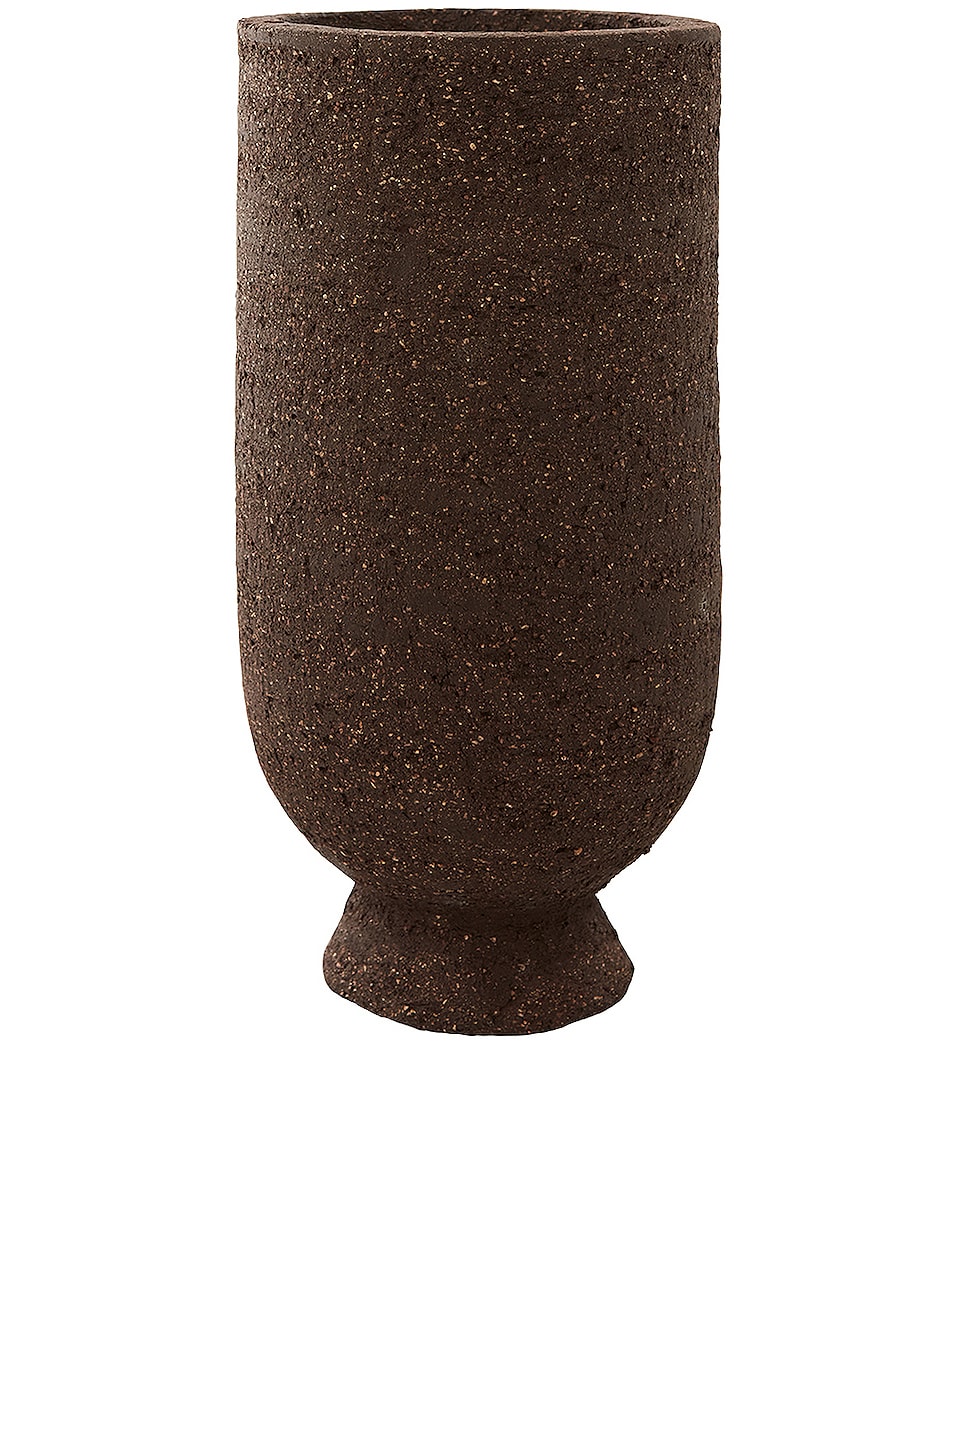 Image 1 of AYTM Terra Flowerpot & Vase in Java Brown